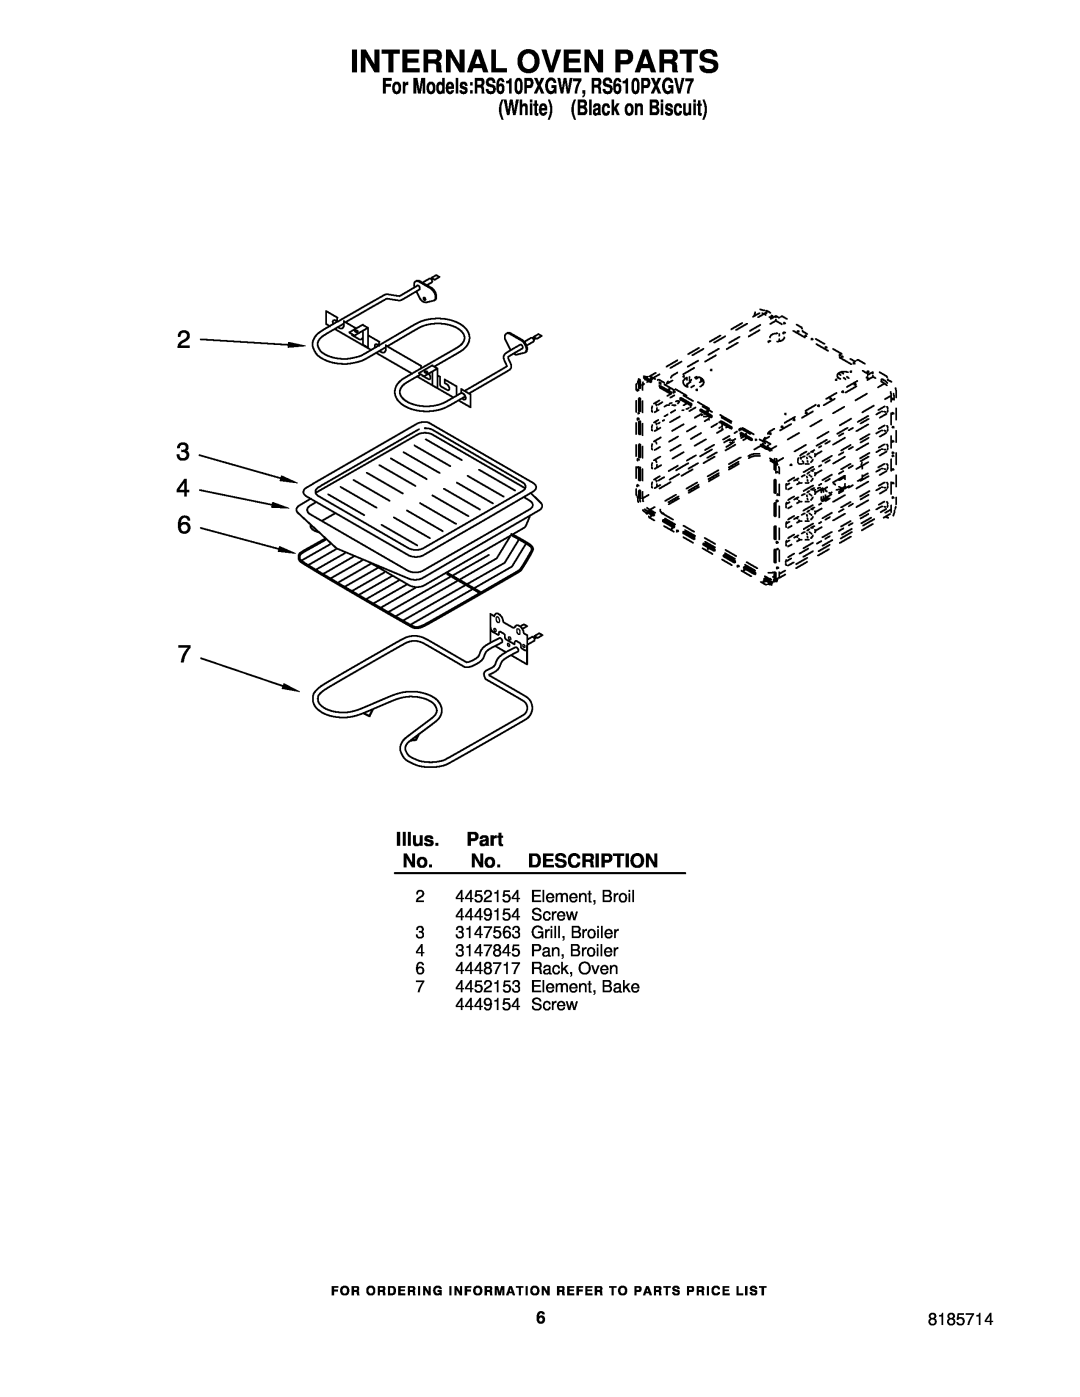 Whirlpool RS610PXGV7 Internal Oven Parts, Illus. Part No. No. DESCRIPTION, Element, Broil 4449154 Screw, 8185714 